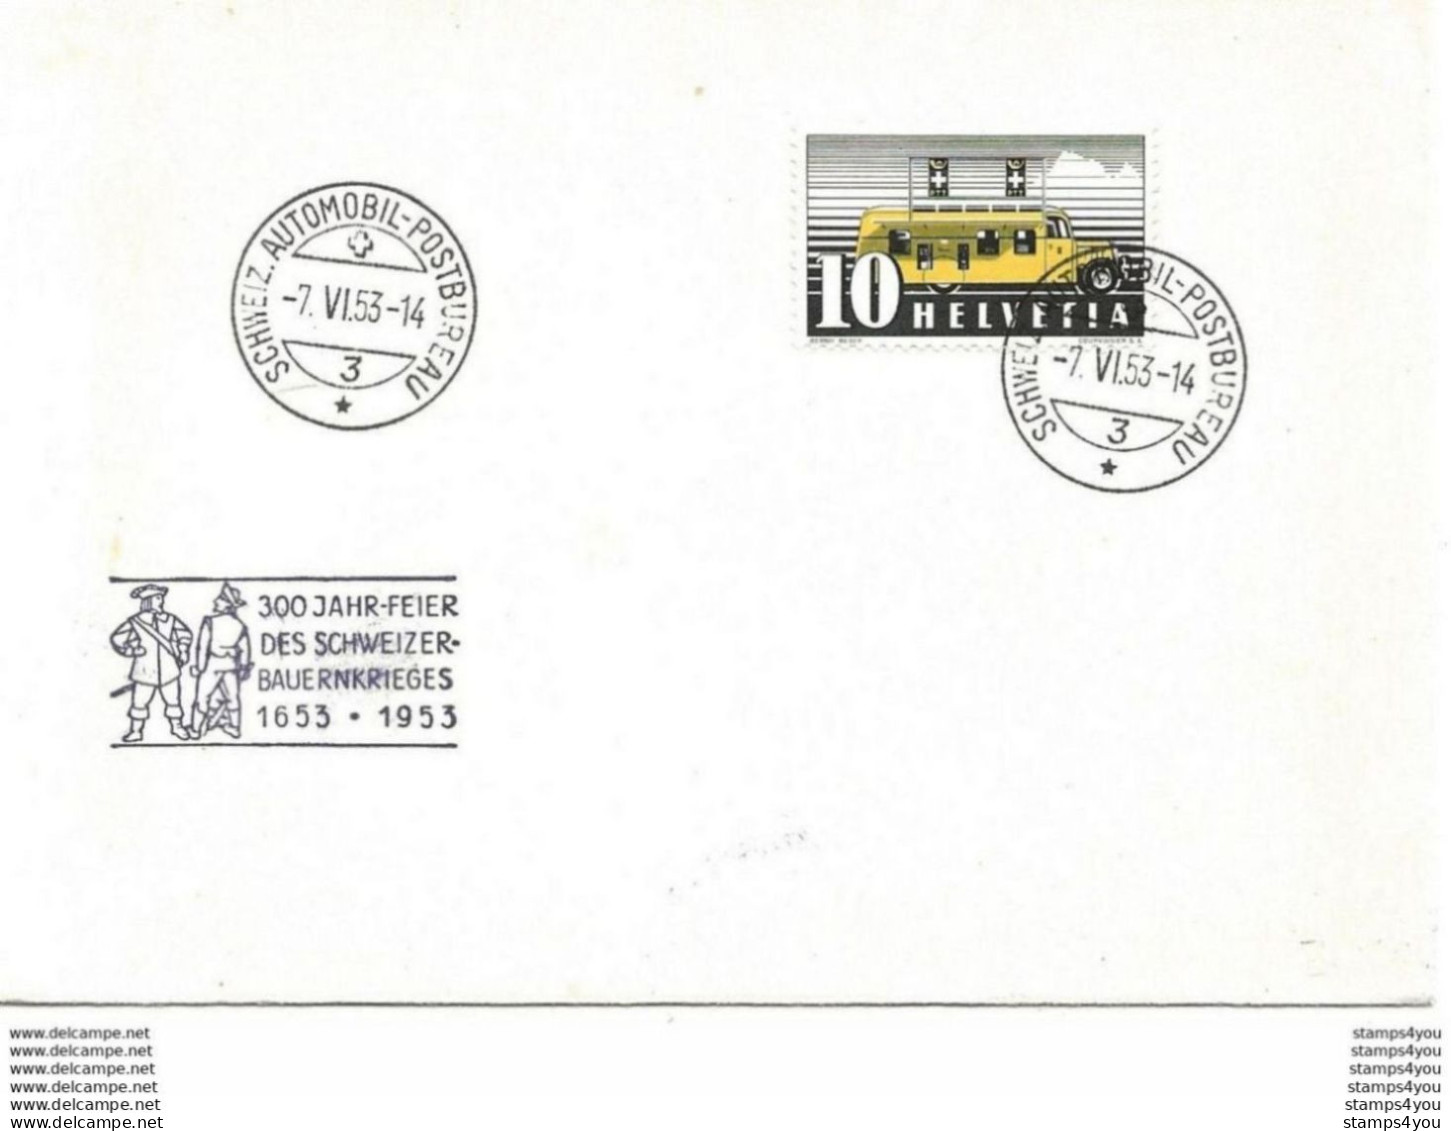 244 - 86 - Enveloppe Avec Oblit Spéciale "300 Jahr-Fest Des Schweizer-Bauernkriefes 1953" - Postmark Collection